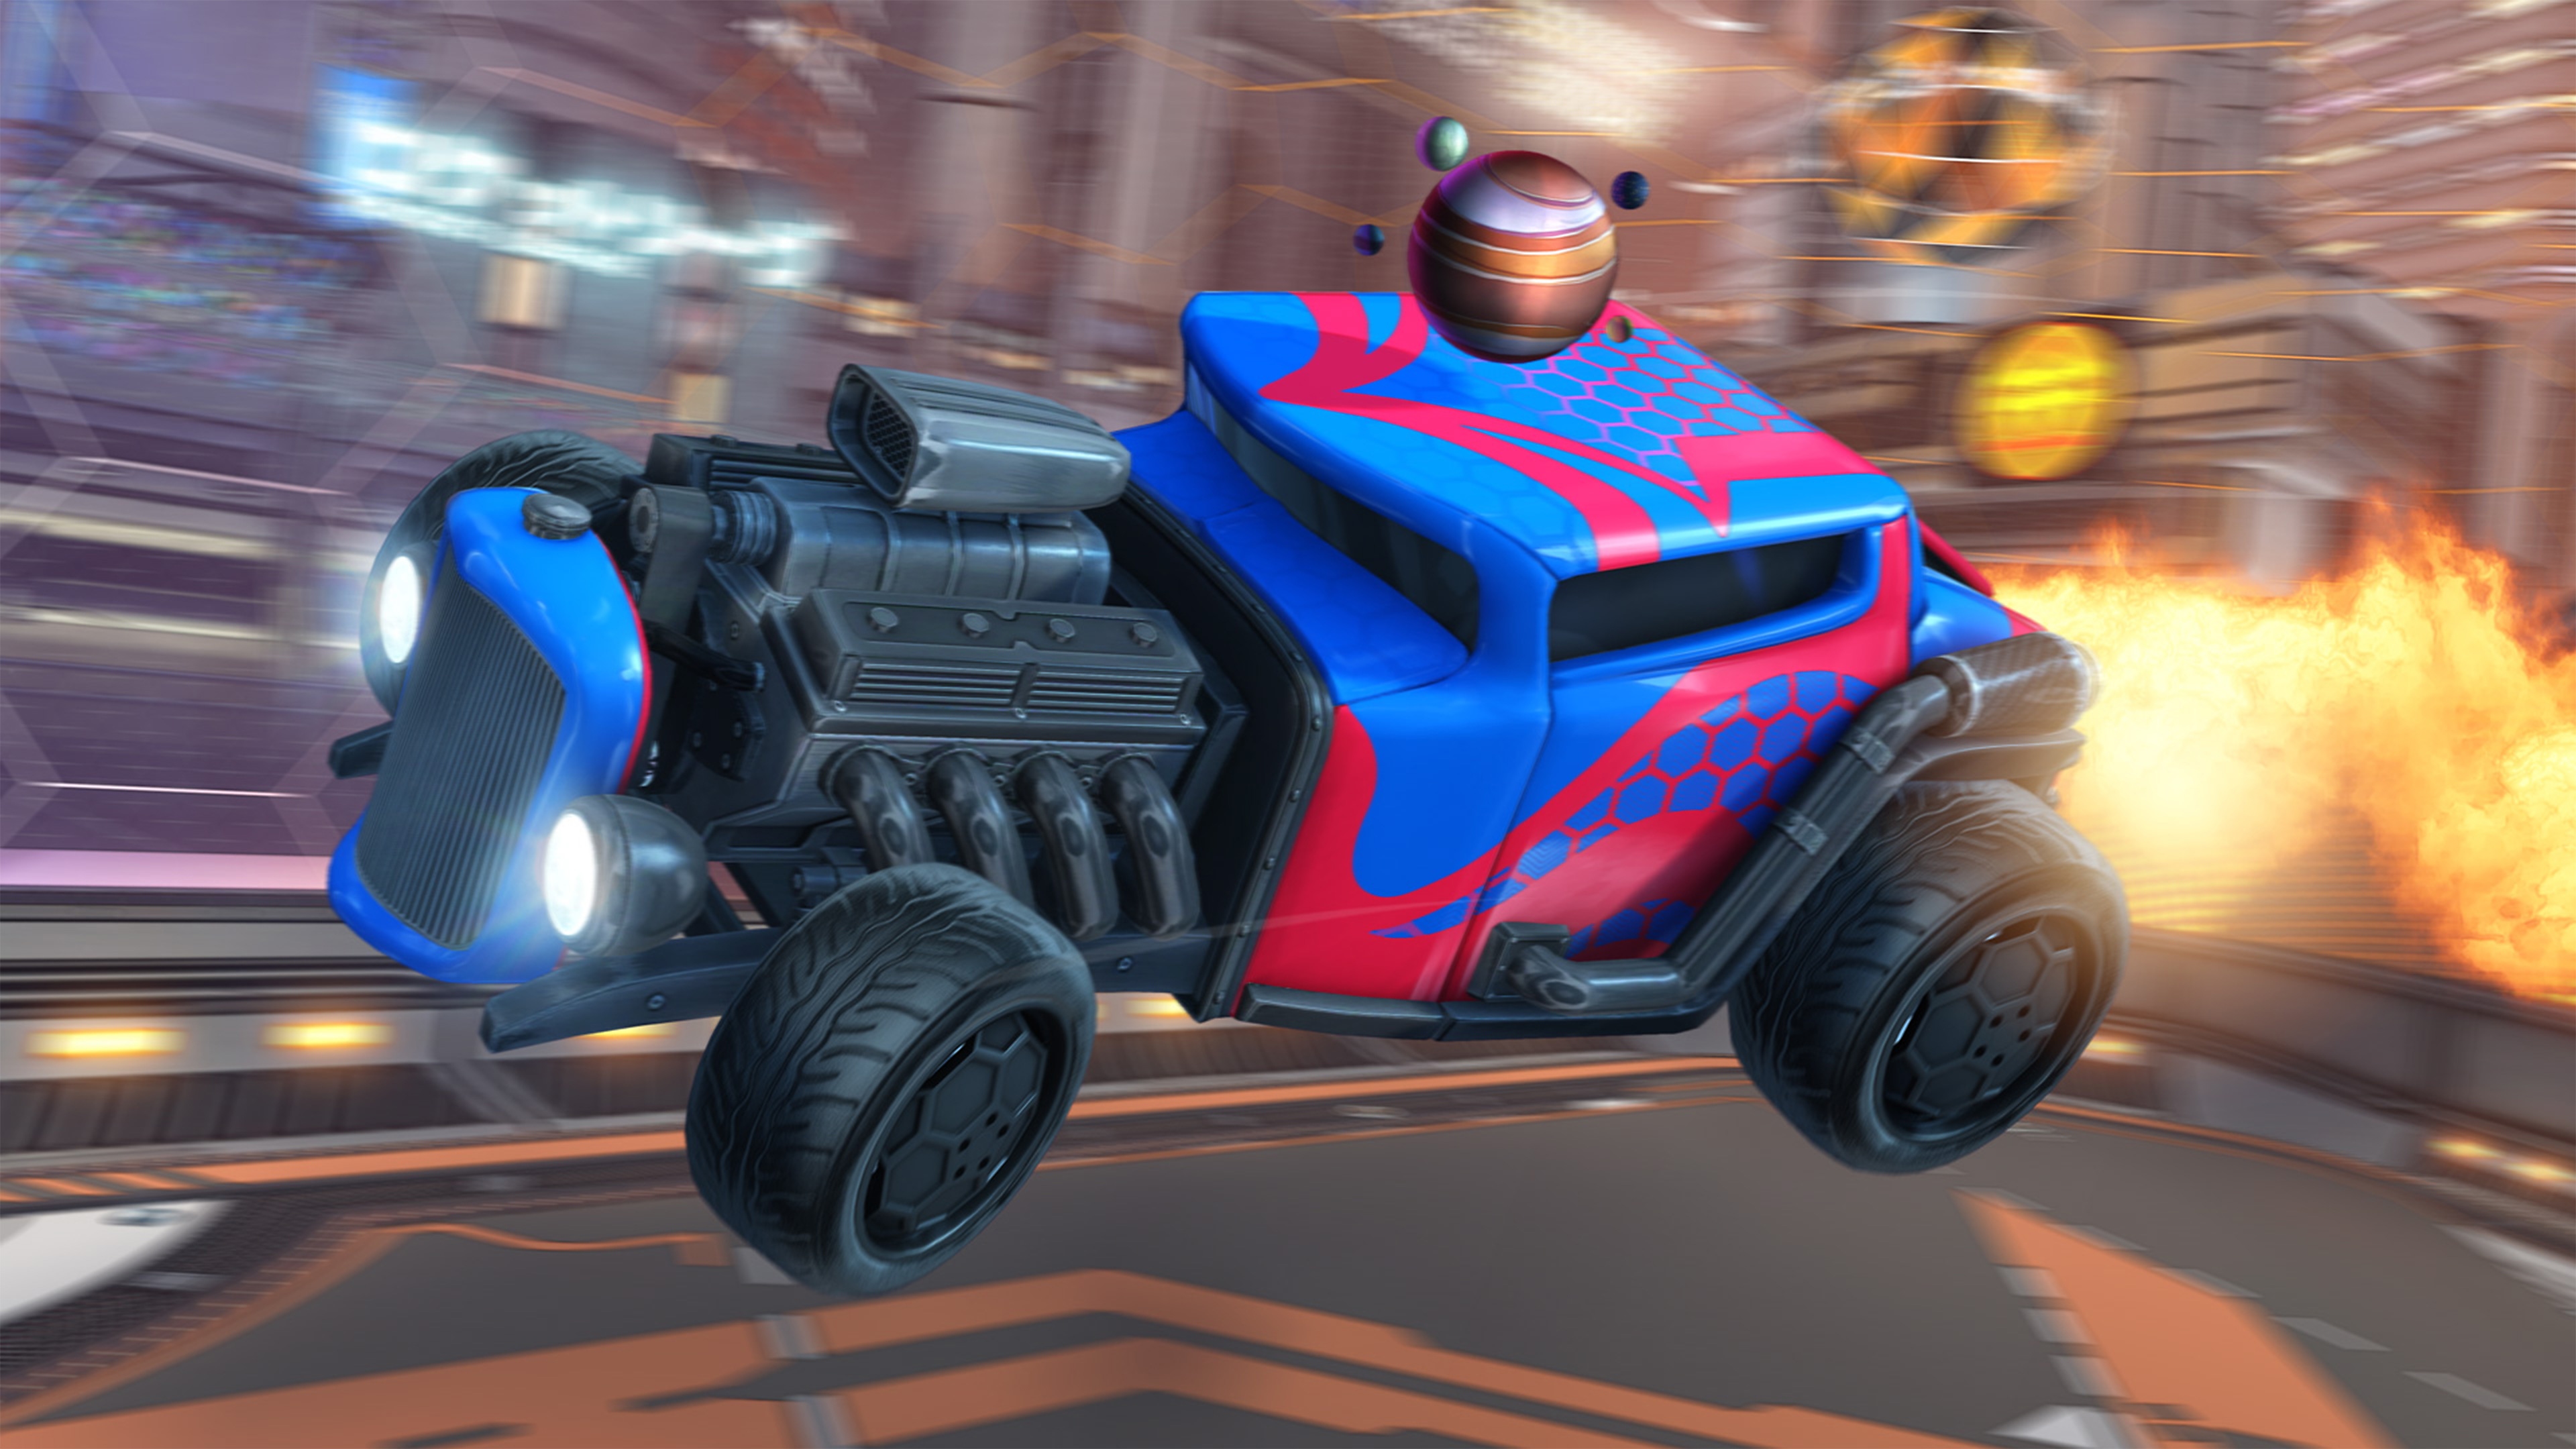 Rocket League - captura de tela mostrando carro estilo hot-rod com motor exposto e pintura vermelha e azul